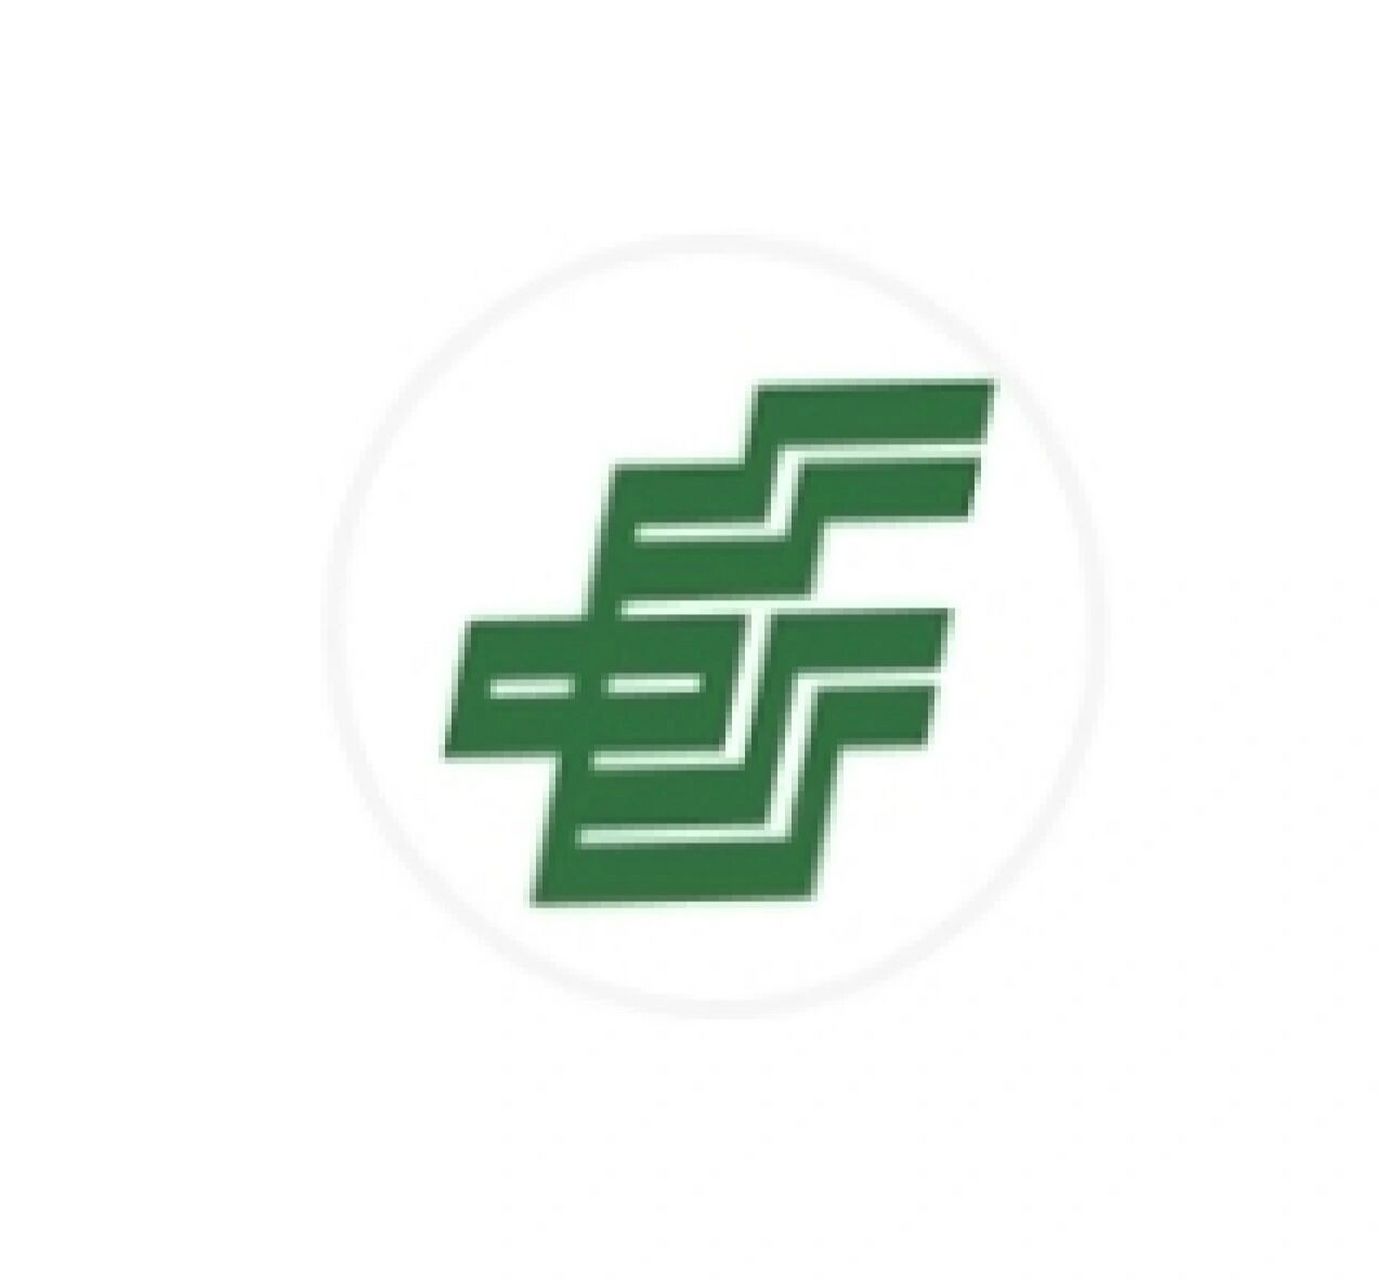 中国集邮logo图片